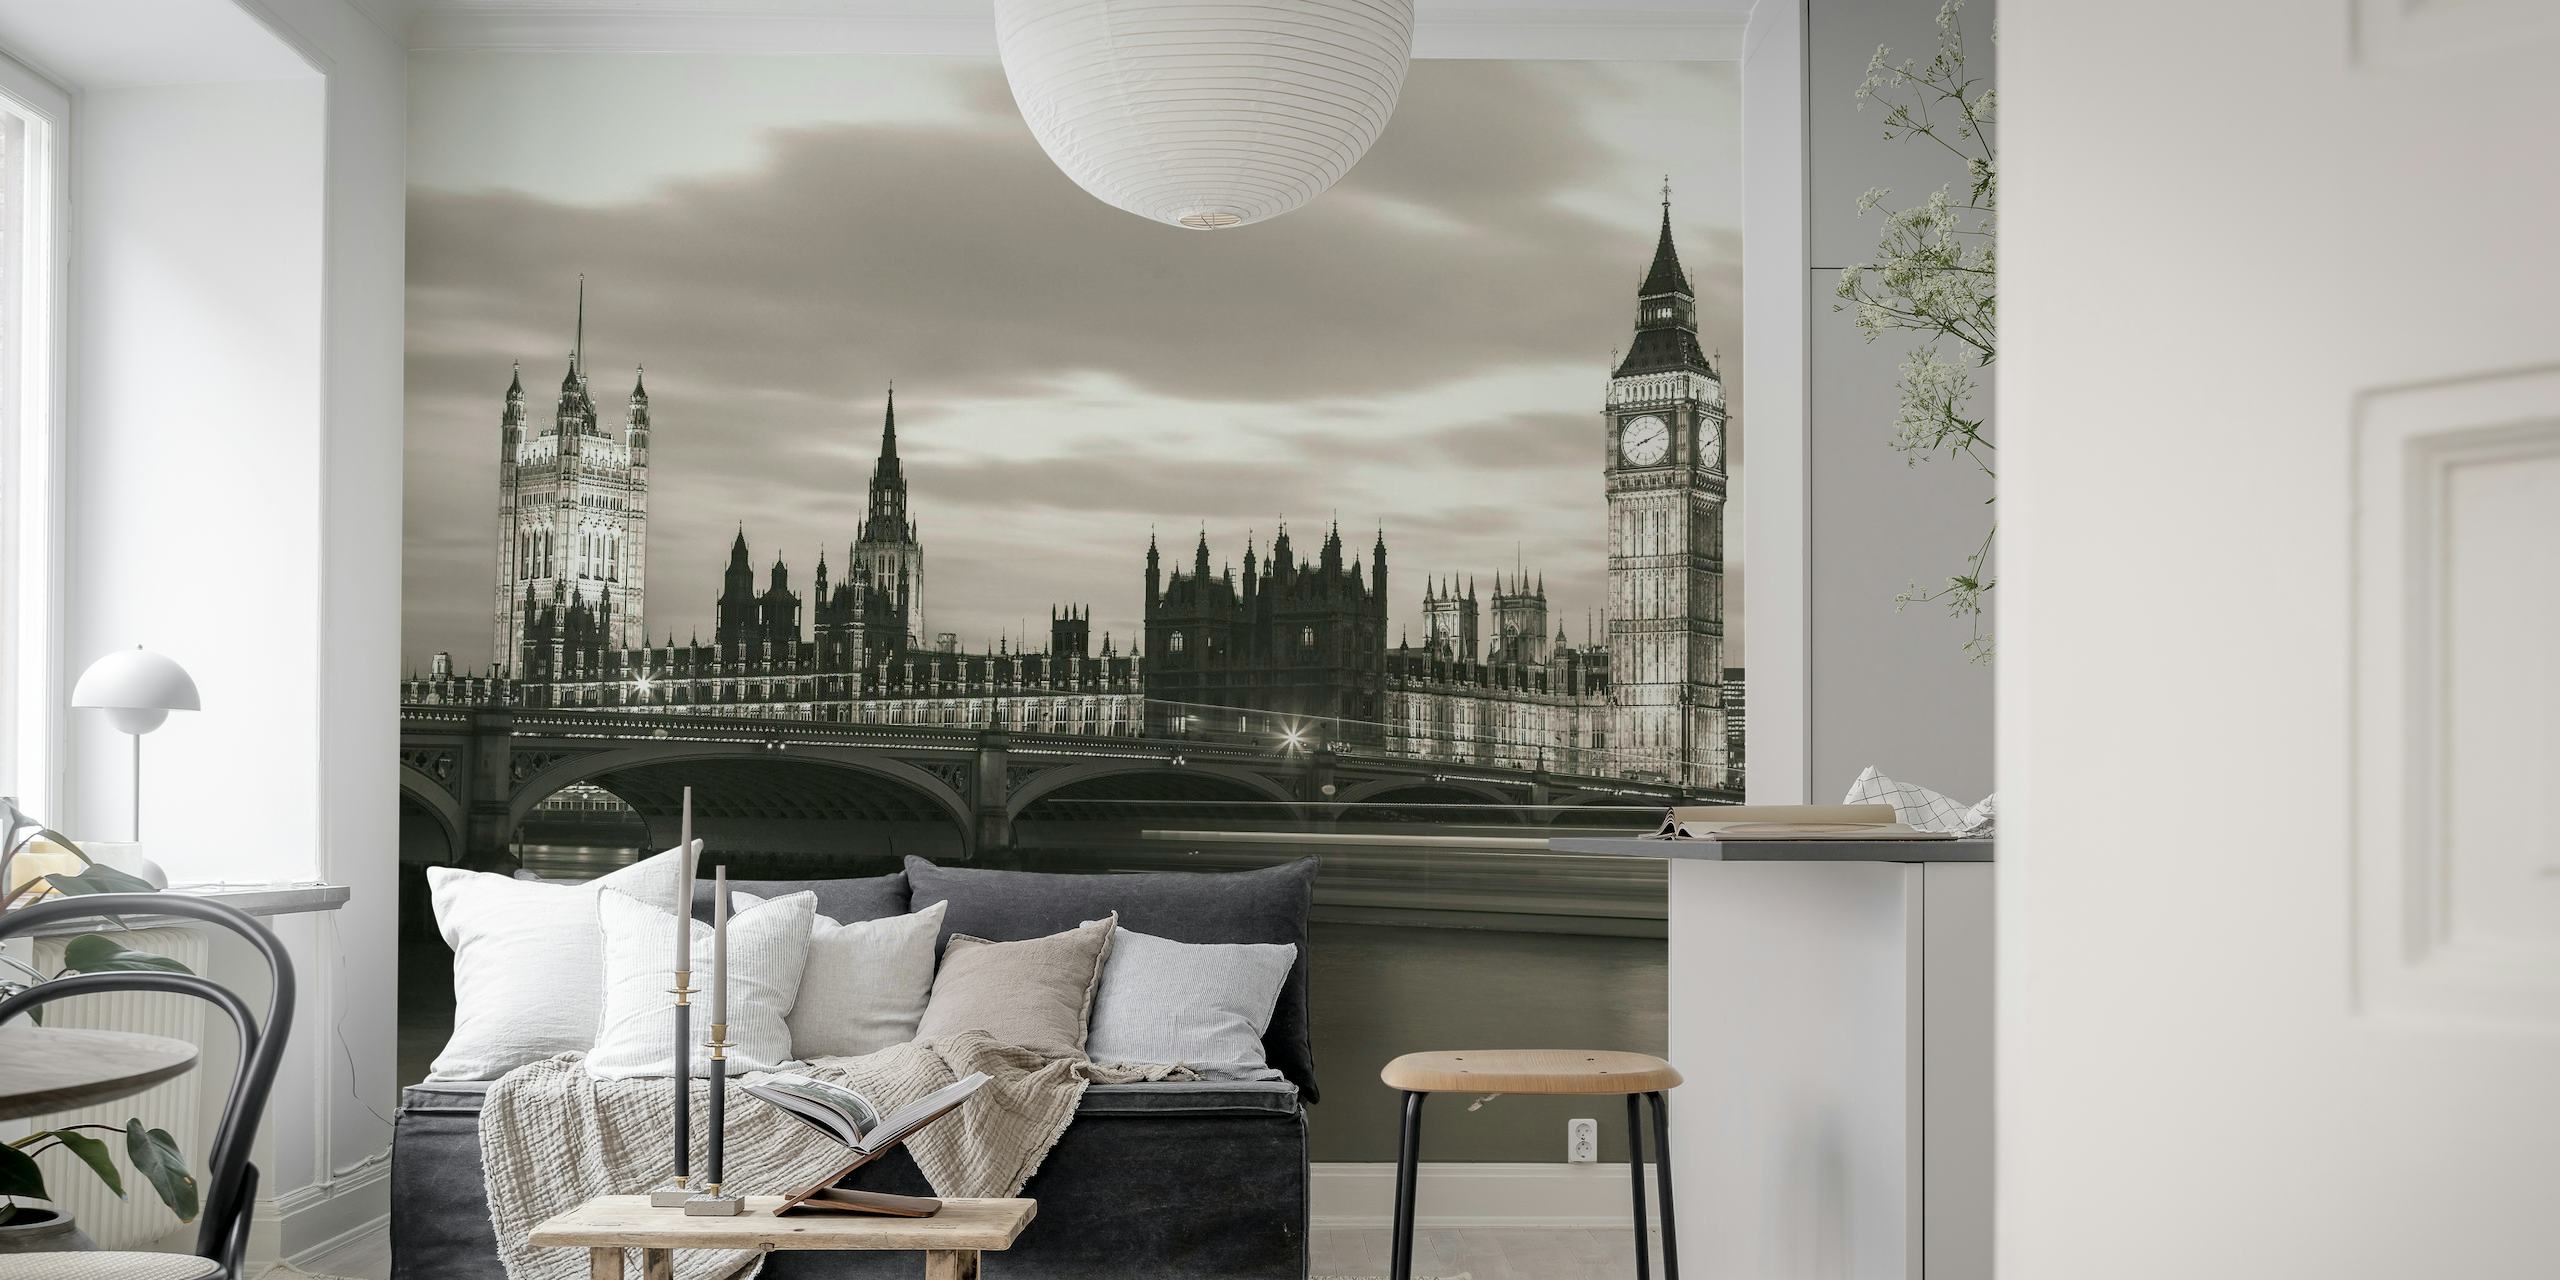 Crno-bijeli zidni mural Westminsterskog mosta i Big Bena u sumrak